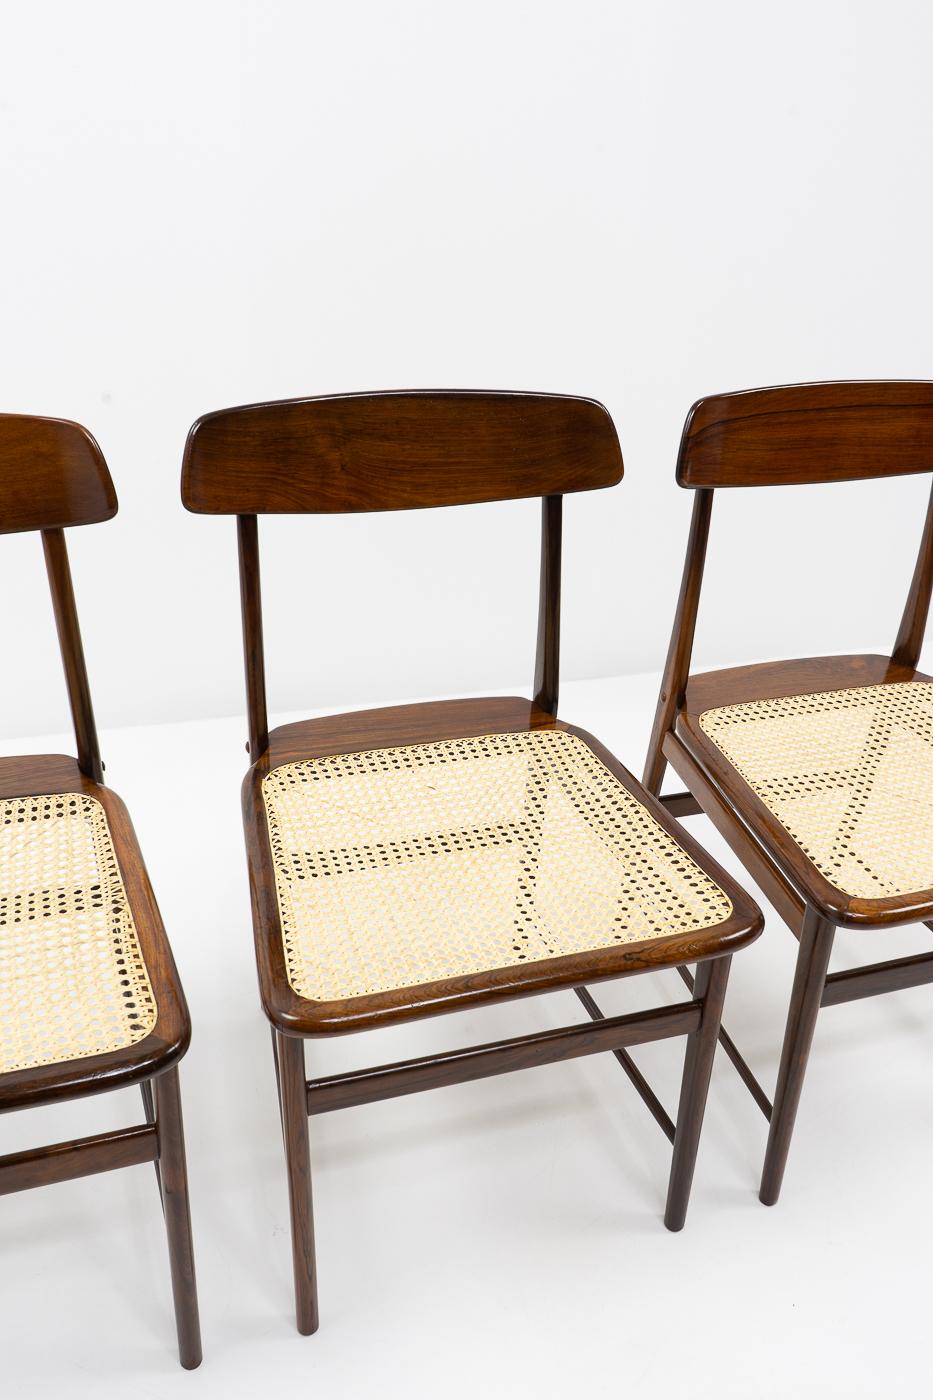 Cane Original Design Sergio Rodrigues, Lucio Chairs for OCA Brazil, 1950s For Sale